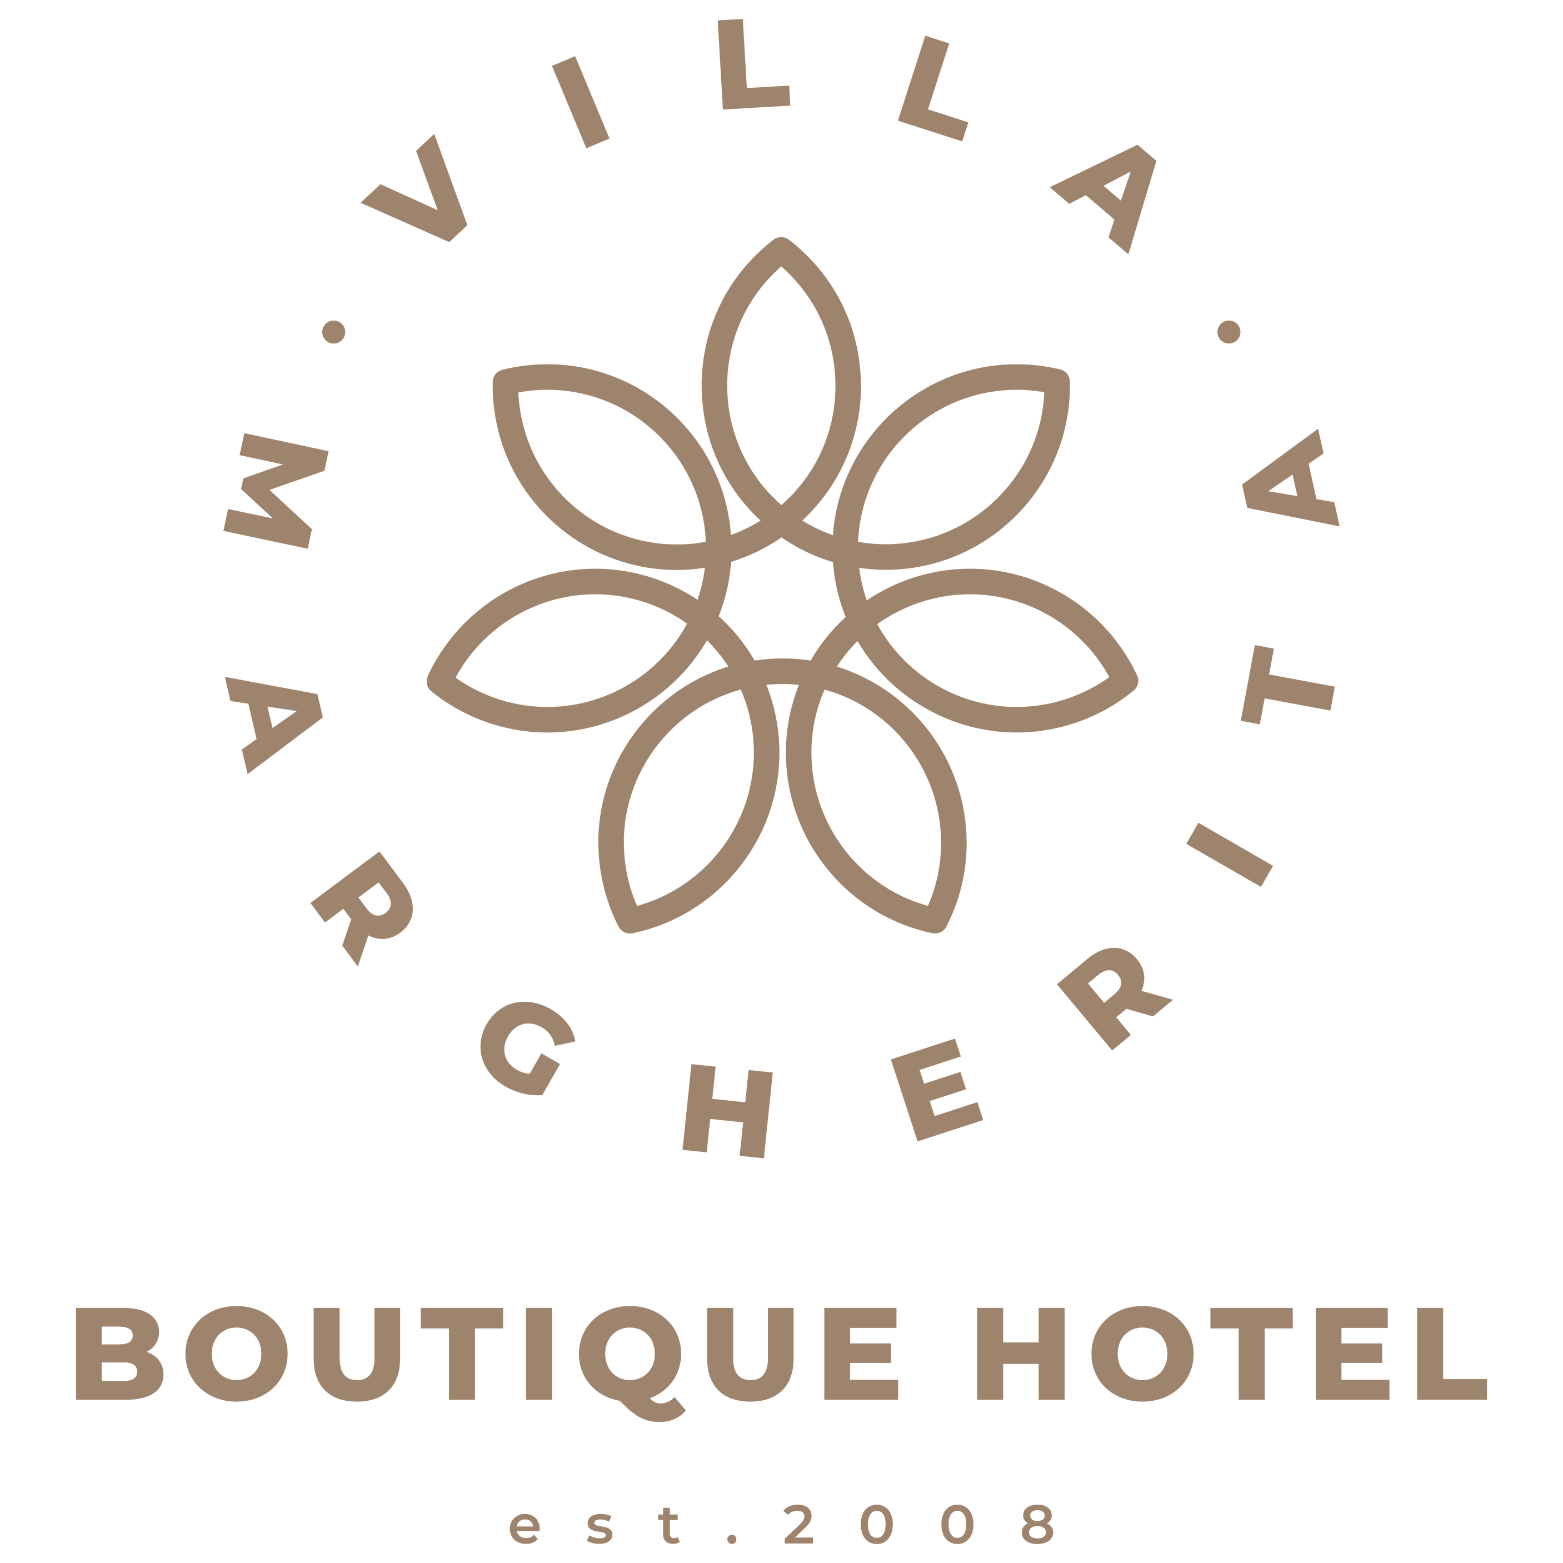 Boutique Hotel Villa Margherita - Swakopmund - Accommodation 